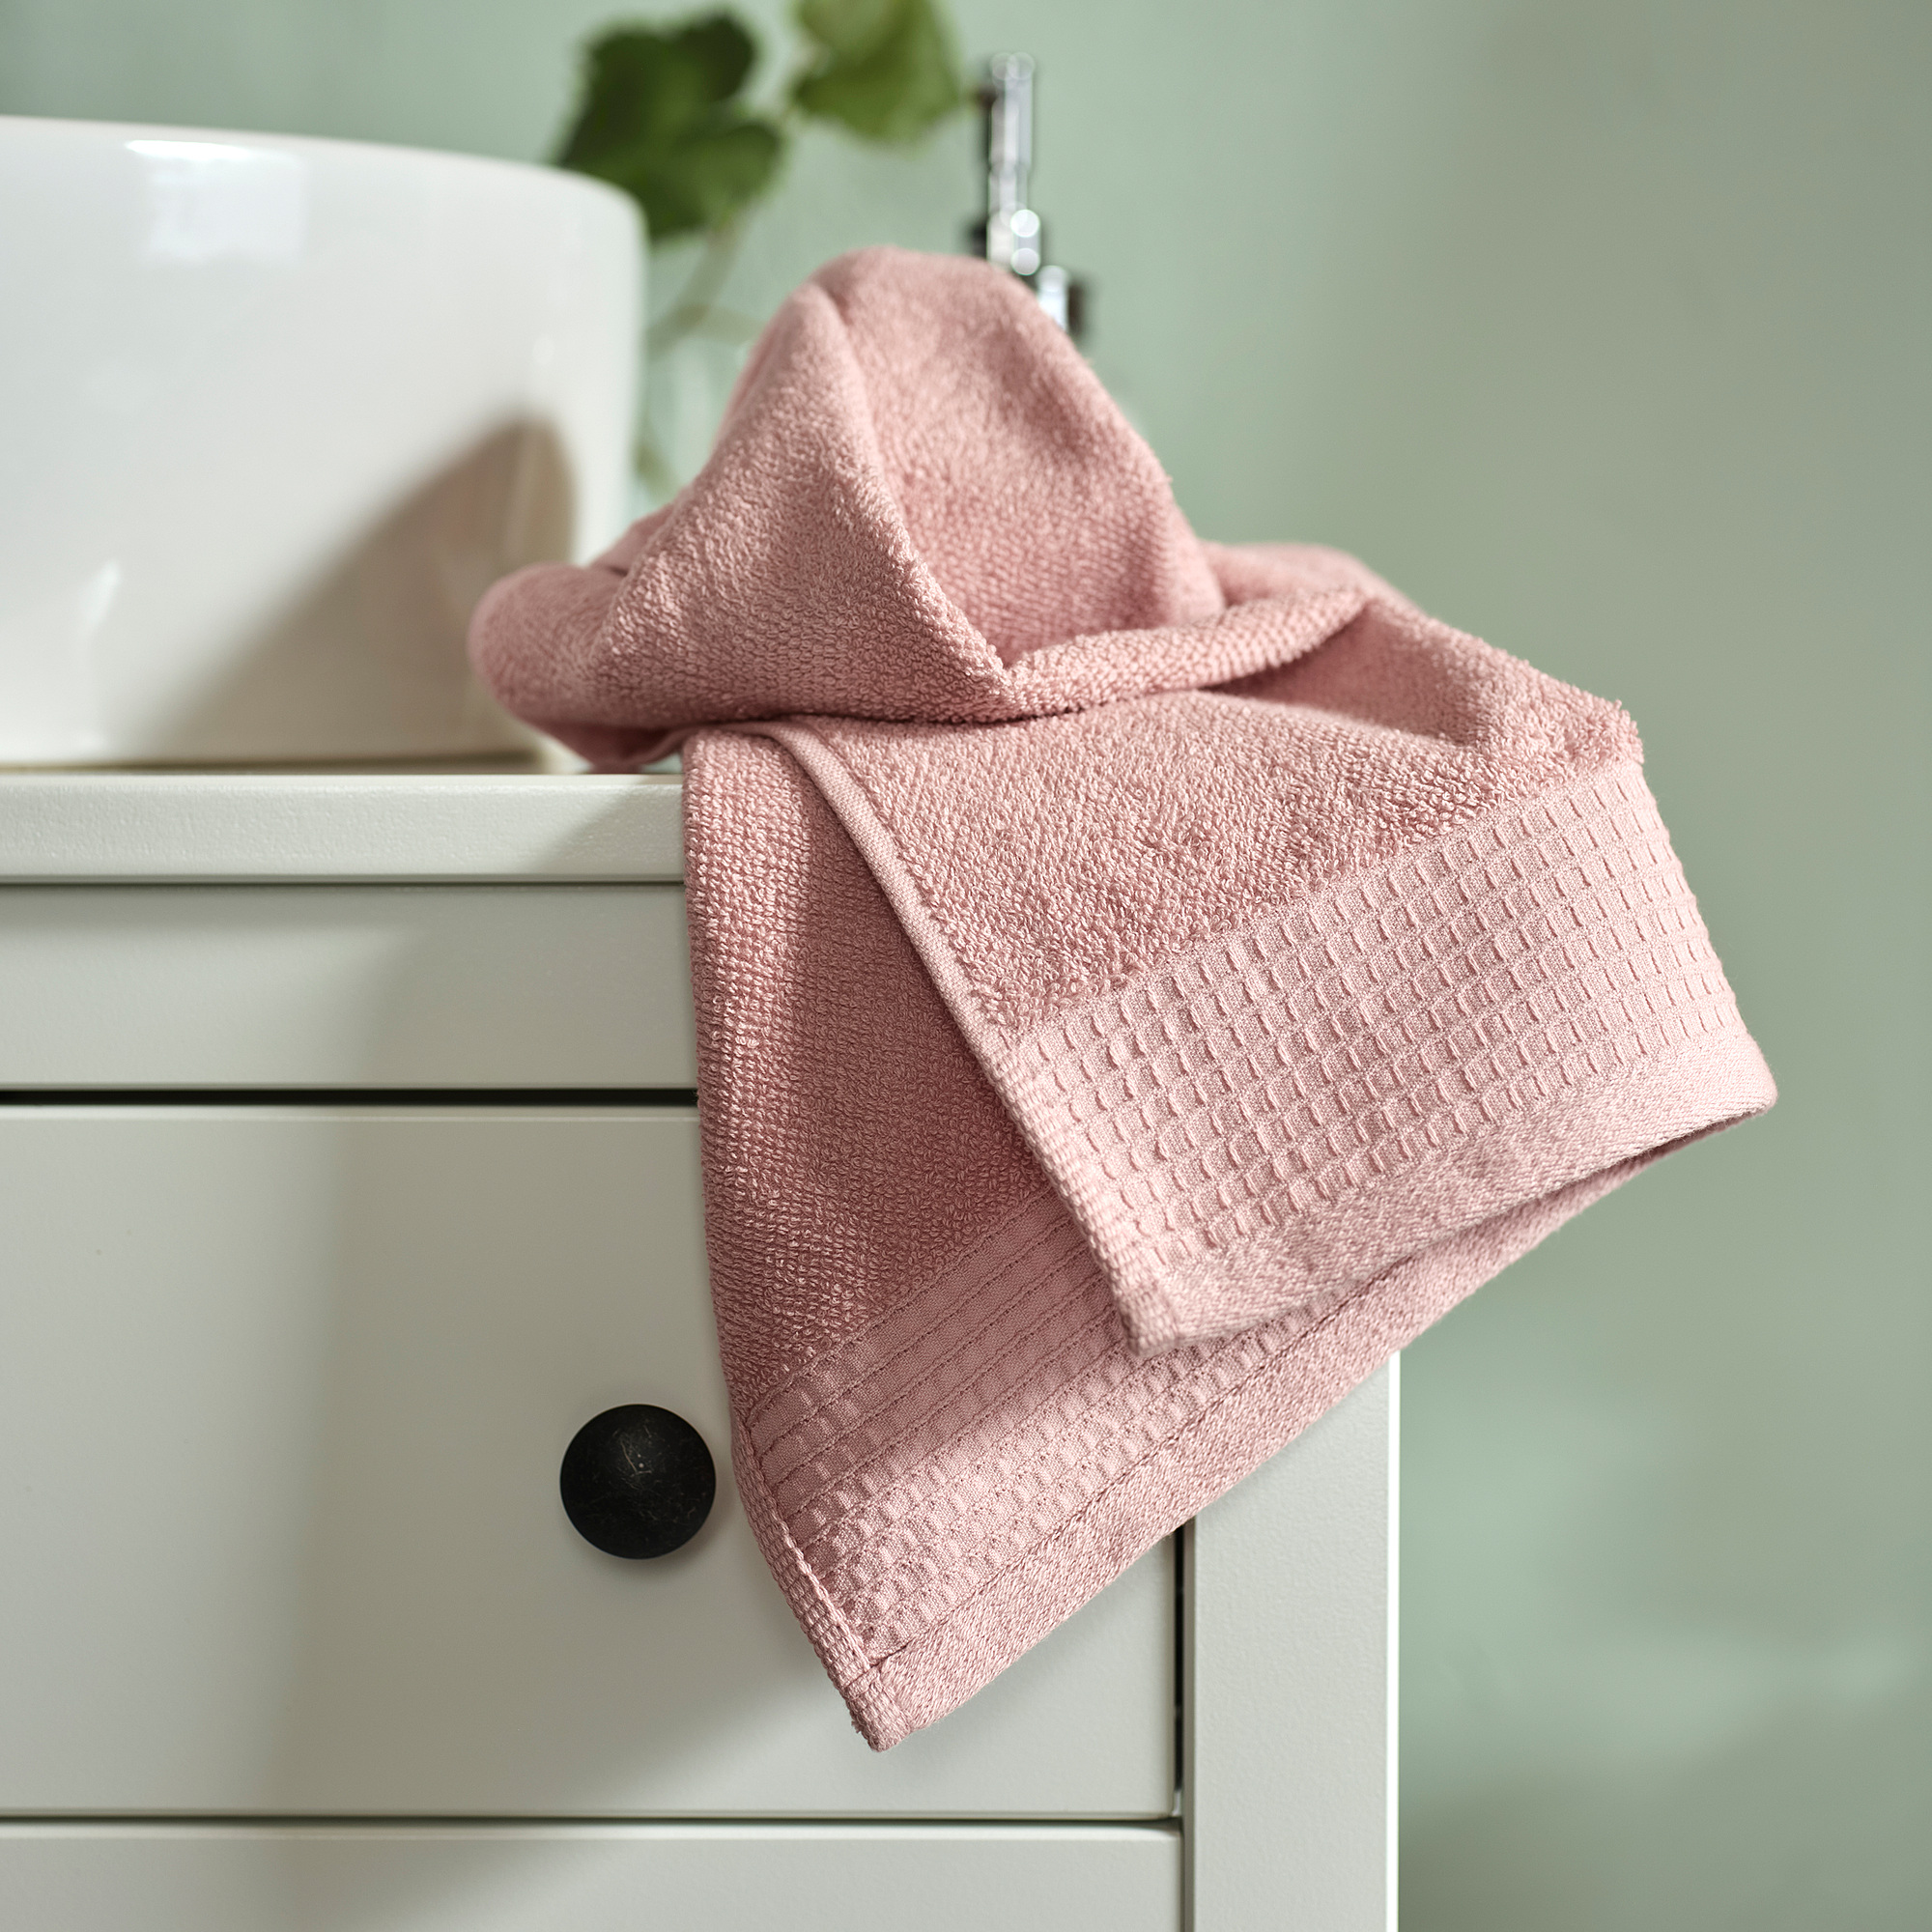 VINARN hand towel